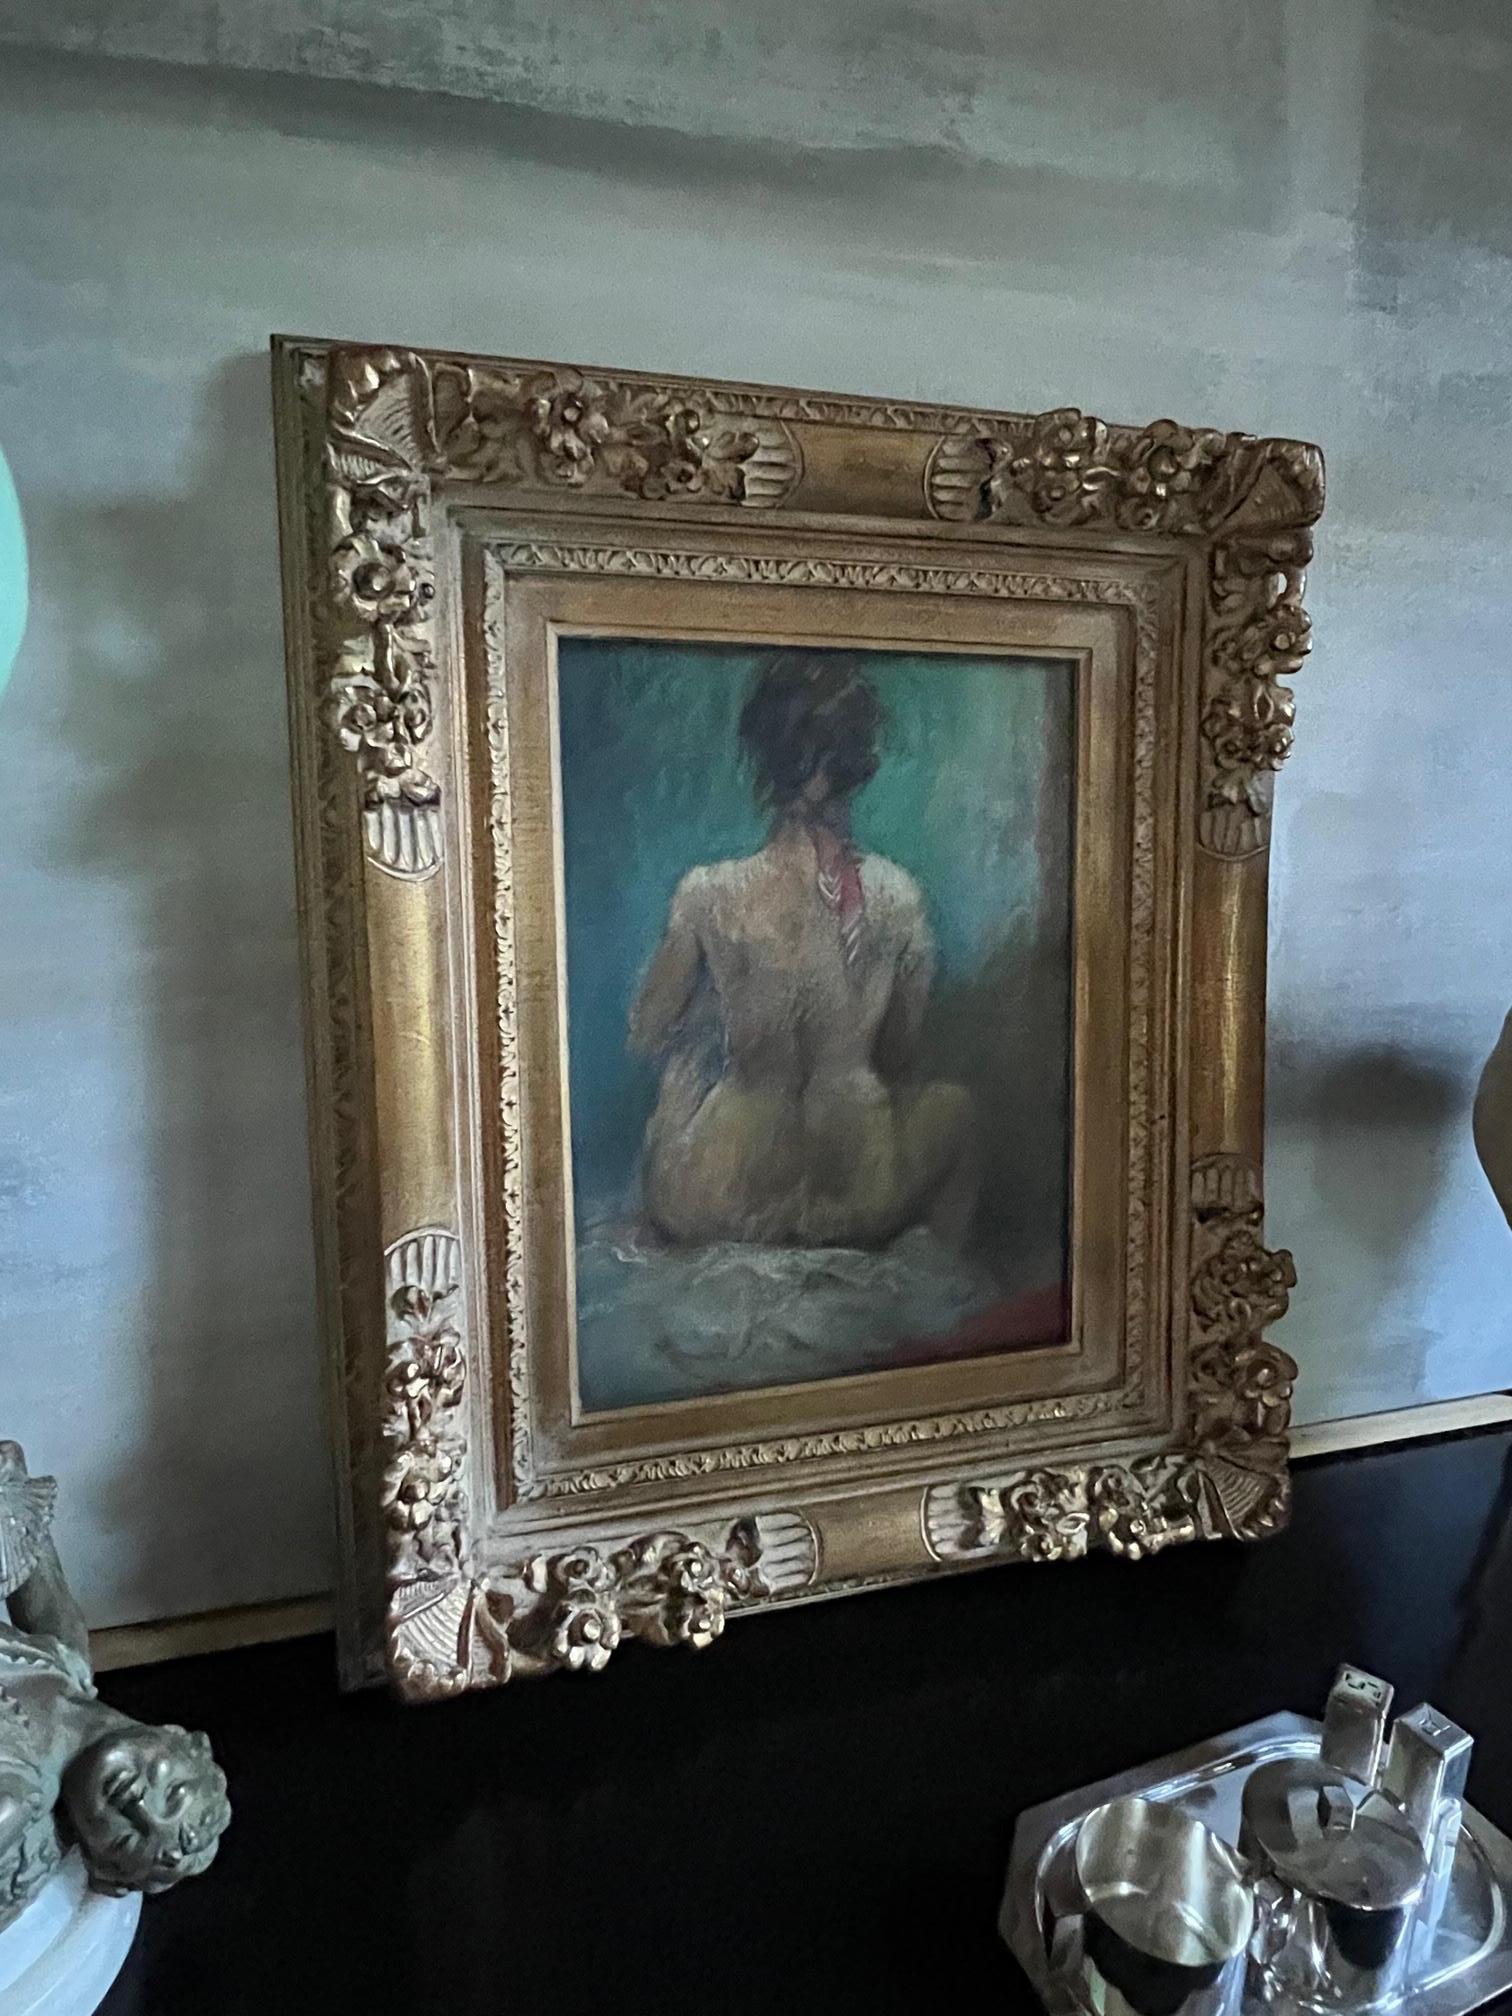 Pastel d'une femme nue portant seulement un bandana rouge, signé par l'artiste Paul F. Williams. Encadré professionnellement dans un cadre en bois sculpté peint en or et prêt à être accroché !

Pastel by sight mesure 15.25